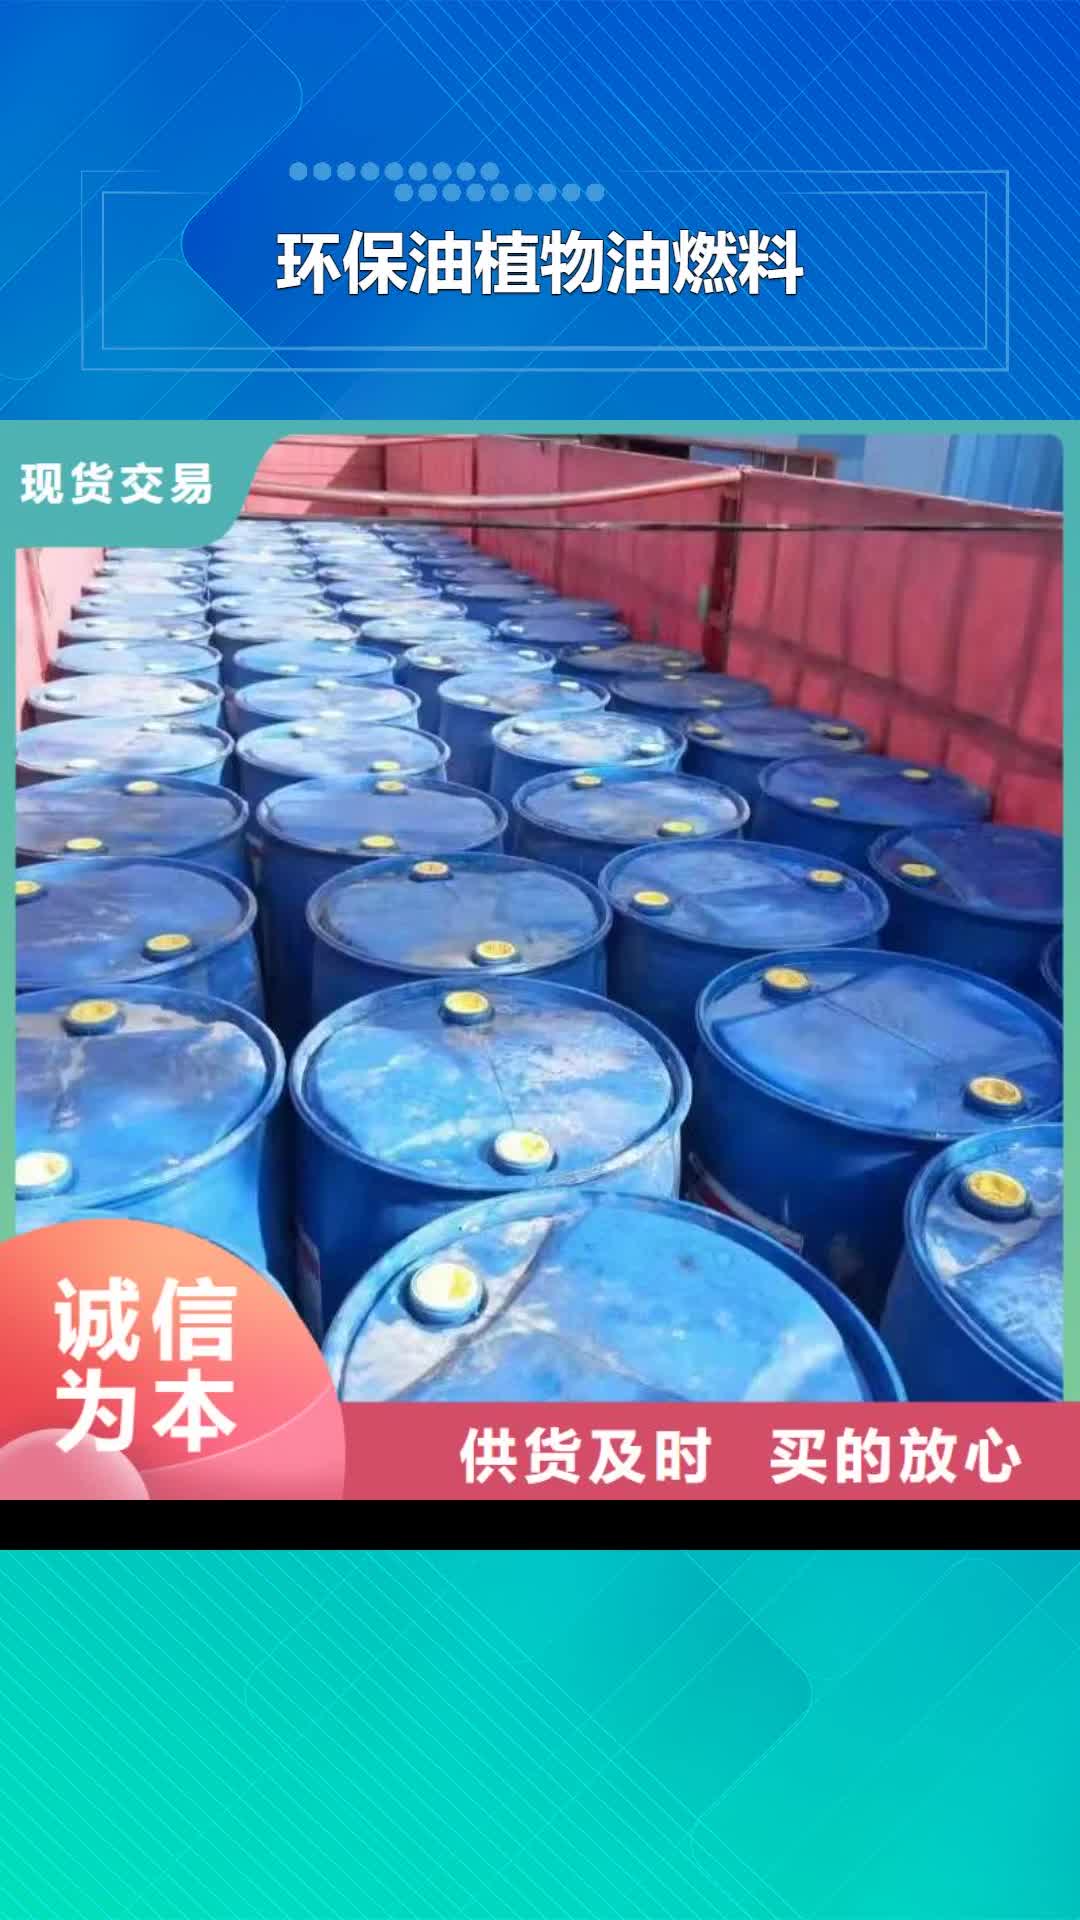 邯郸 环保油植物油燃料,【静音植物油燃料灶具】专业的生产厂家